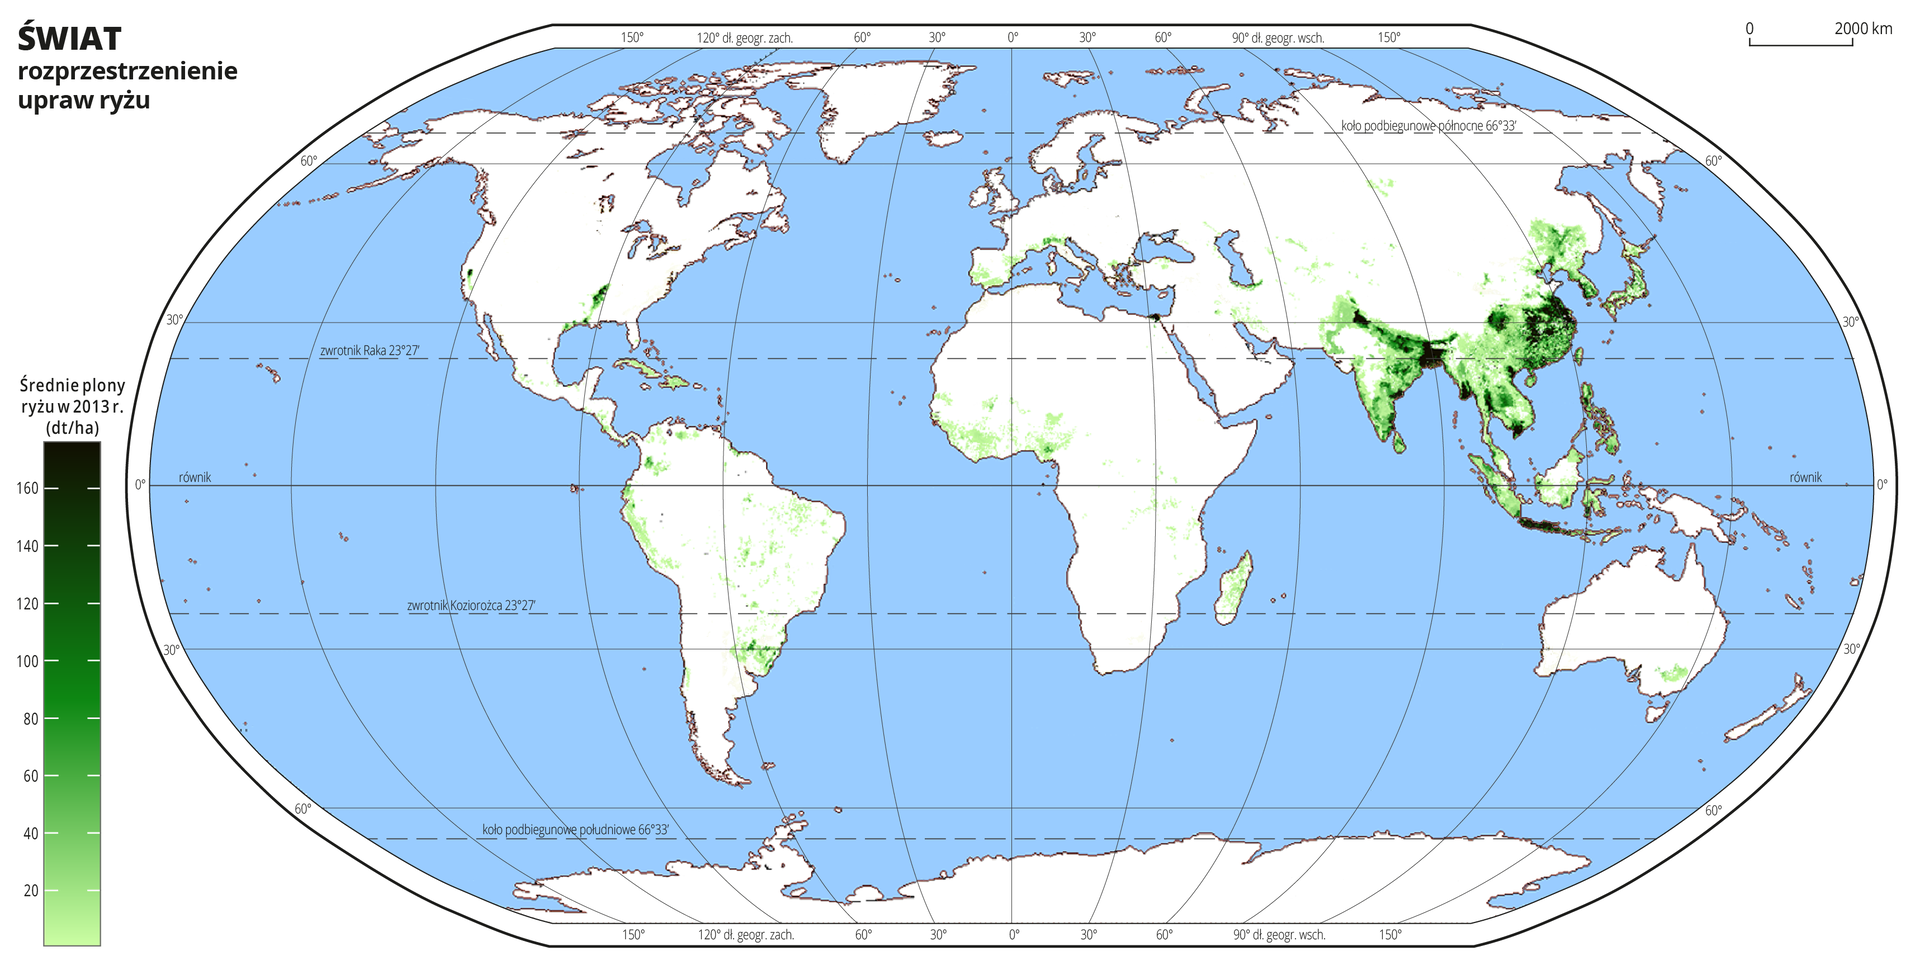 Ilustracja przedstawia mapę świata. Wody zaznaczono kolorem niebieskim.Na mapie odcieniami koloru zielonego zaznaczono średnie plony ryżu w decytonach z hektara w dwa tysiące trzynastym roku.Najjaśniejszym odcieniem koloru zielonego oznaczono obszary, na których średnie plony ryżu wynoszą poniżej dwudziestu decyton z hektara, a najciemniejszym obszary, na których plony ryżu przekraczają sto sześćdziesiąt decyton z hektara. Uprawy ryżu występują gównie w południowo-wschodniej części Azji, nieliczne pojedyncze uprawy występują w środkowej części Afryki i w Ameryce Południowej oraz w Europie w państwach położonych nad Morzem Śródziemnym.Mapa pokryta jest równoleżnikami i południkami. Dookoła mapy w białej ramce opisano współrzędne geograficzne co dwadzieścia stopni.Na dole mapy po lewej stronie umieszczono pionowy pasek podzielony na dziewięć części. Odcieniami koloru zielonego oznaczono średnie plony ryżu w decytonach z hektara w dwa tysiące trzynastym roku od dwudziestu do stu sześćdziesięciu decyton z hektara co dwadzieścia decyton z hektara.